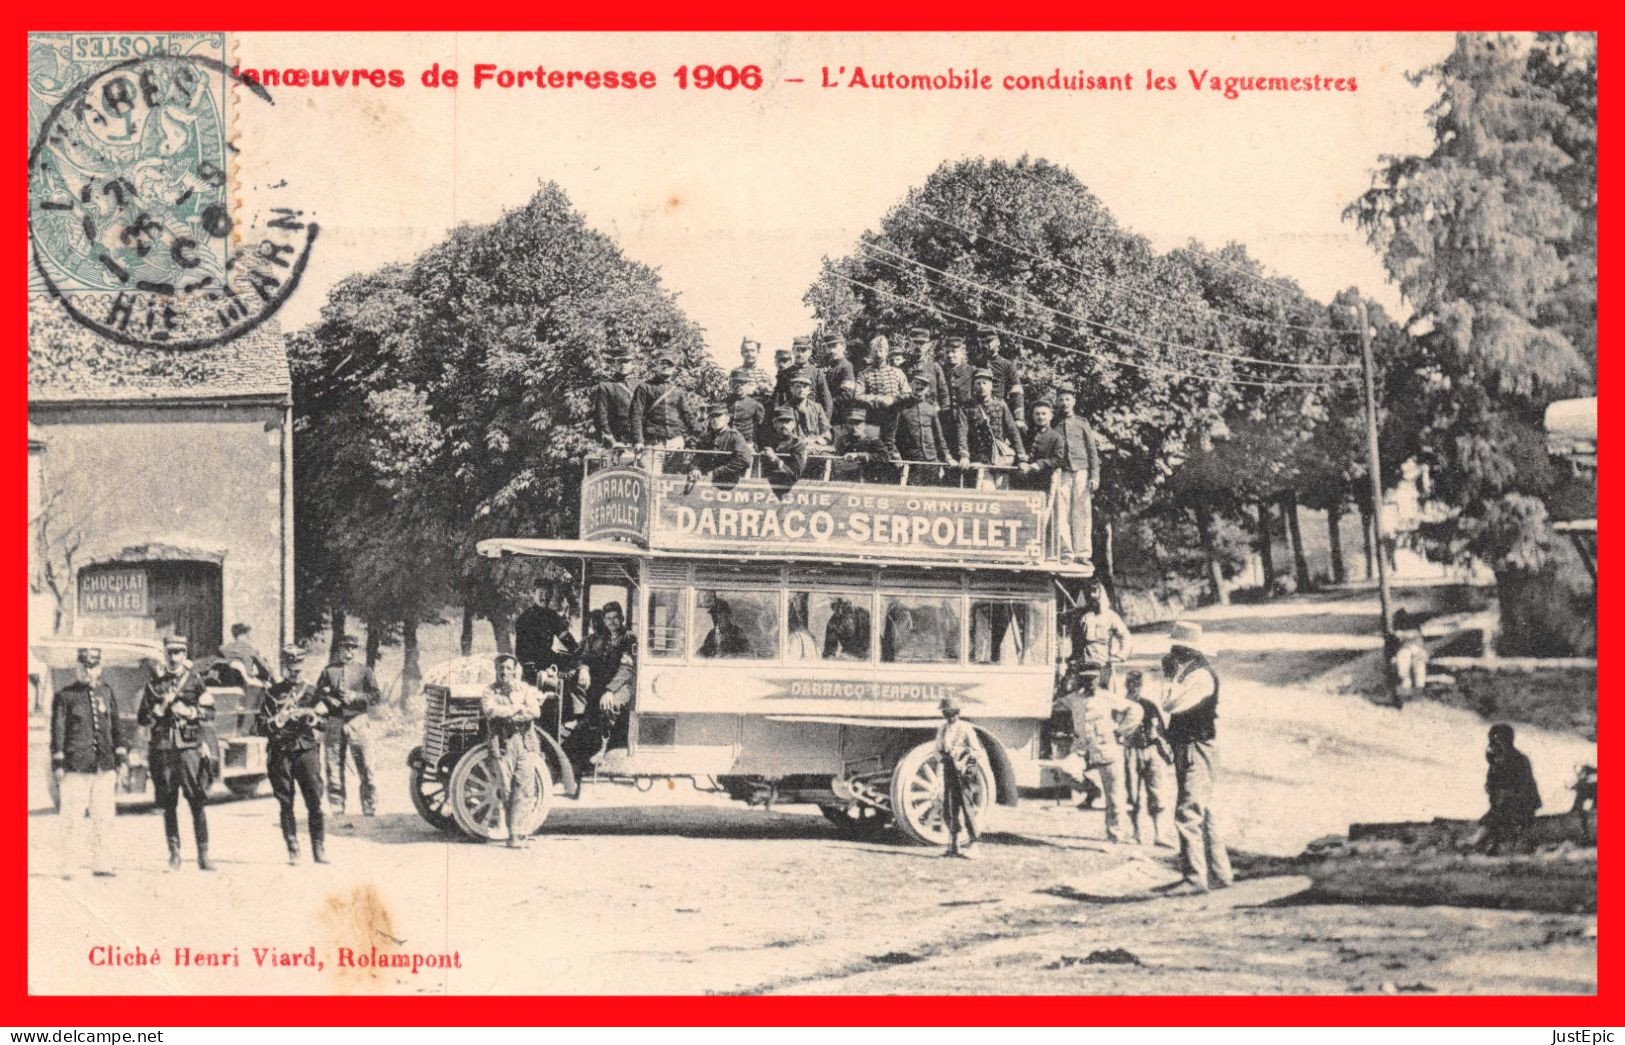 52 COMPAGNIE DES OMNIBUS DARRACQ SERPOLLET - Le Transport Des Vaguemestres Lors Des Manœuvres De Forteresse En 1906 Cpa - Autobús & Autocar